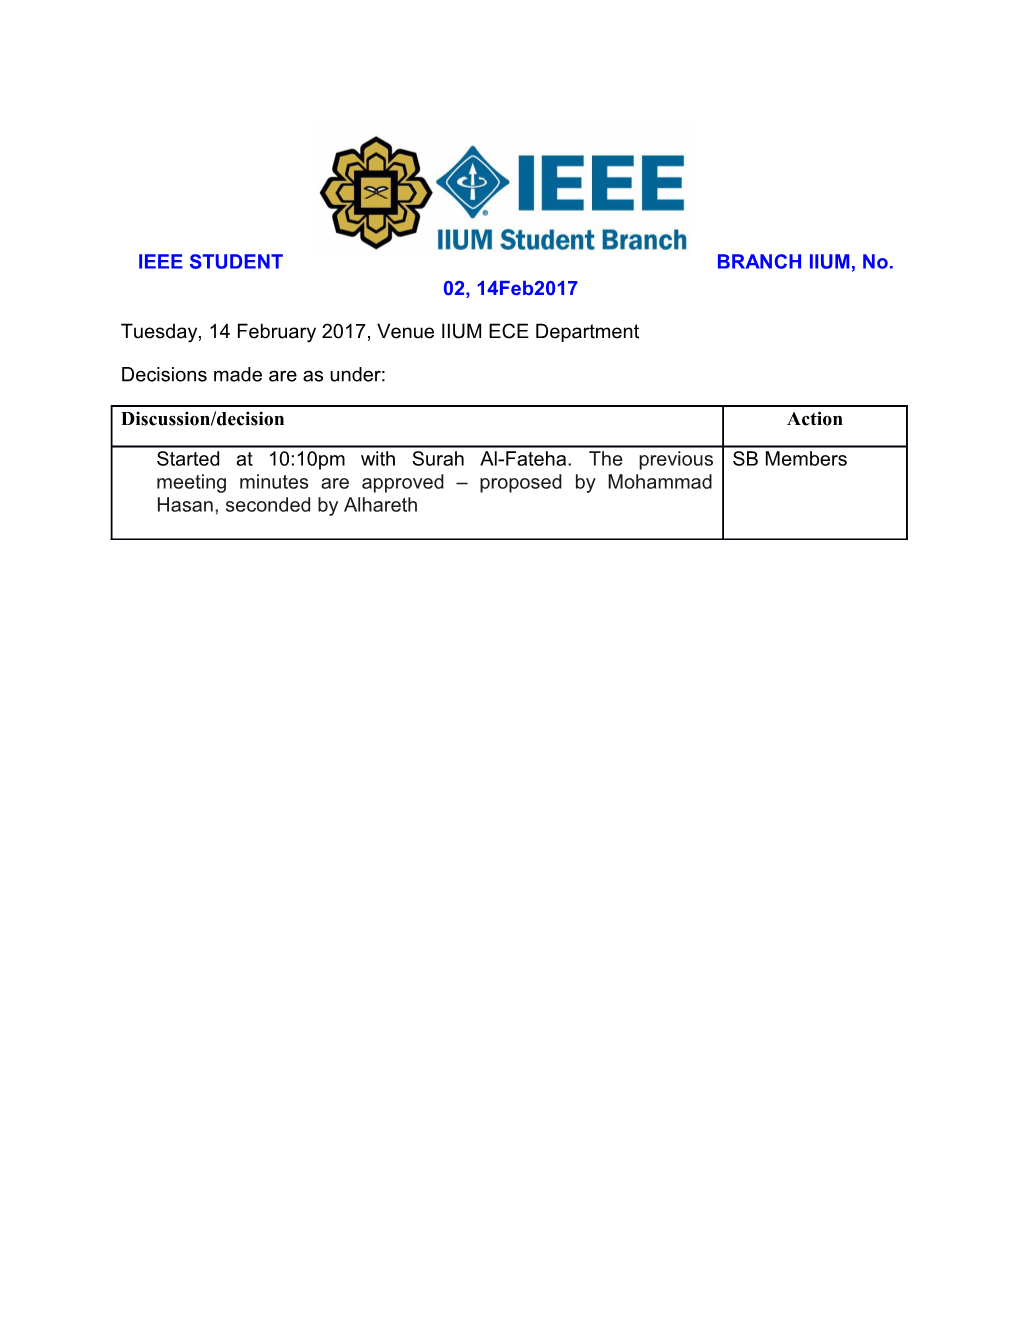 IEEE STUDENT BRANCH IIUM, No. 02, 14Feb2017